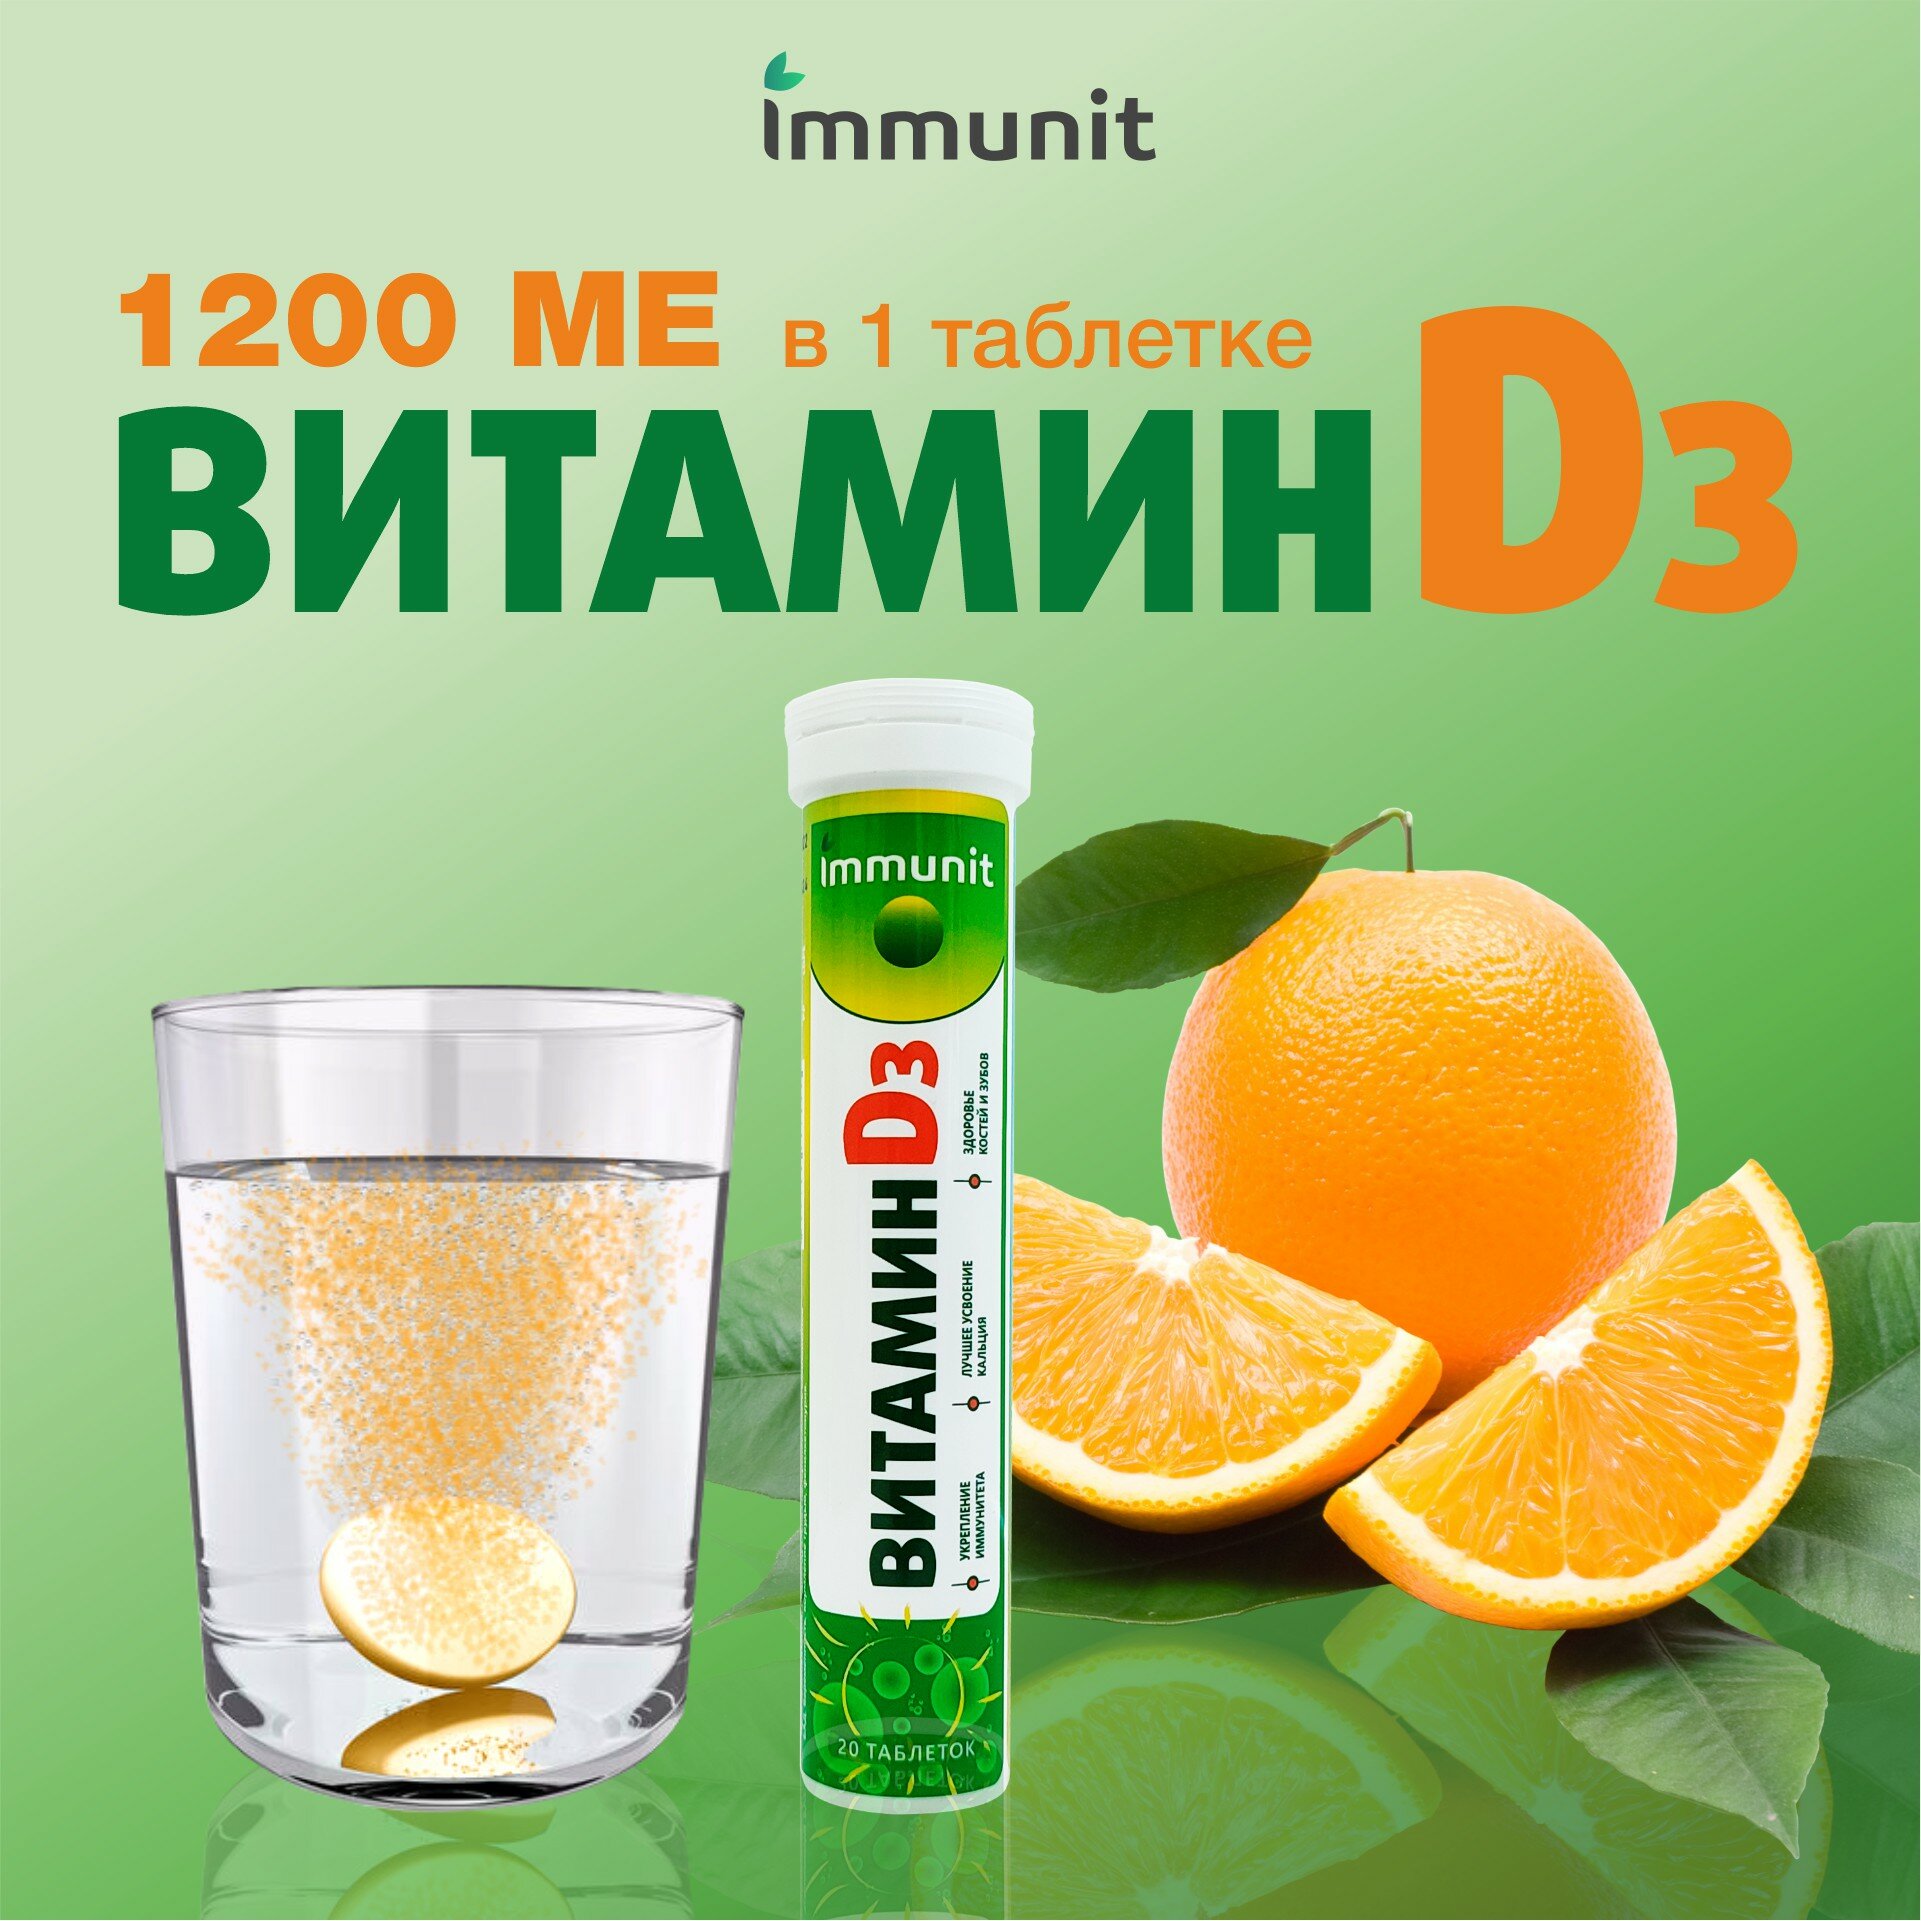 Витамин Д3 1200 МЕ Immunit шипучие таблетки 20 штук витамины и минералы для лучшего усвоения кальция, для укрепления костей и зубов